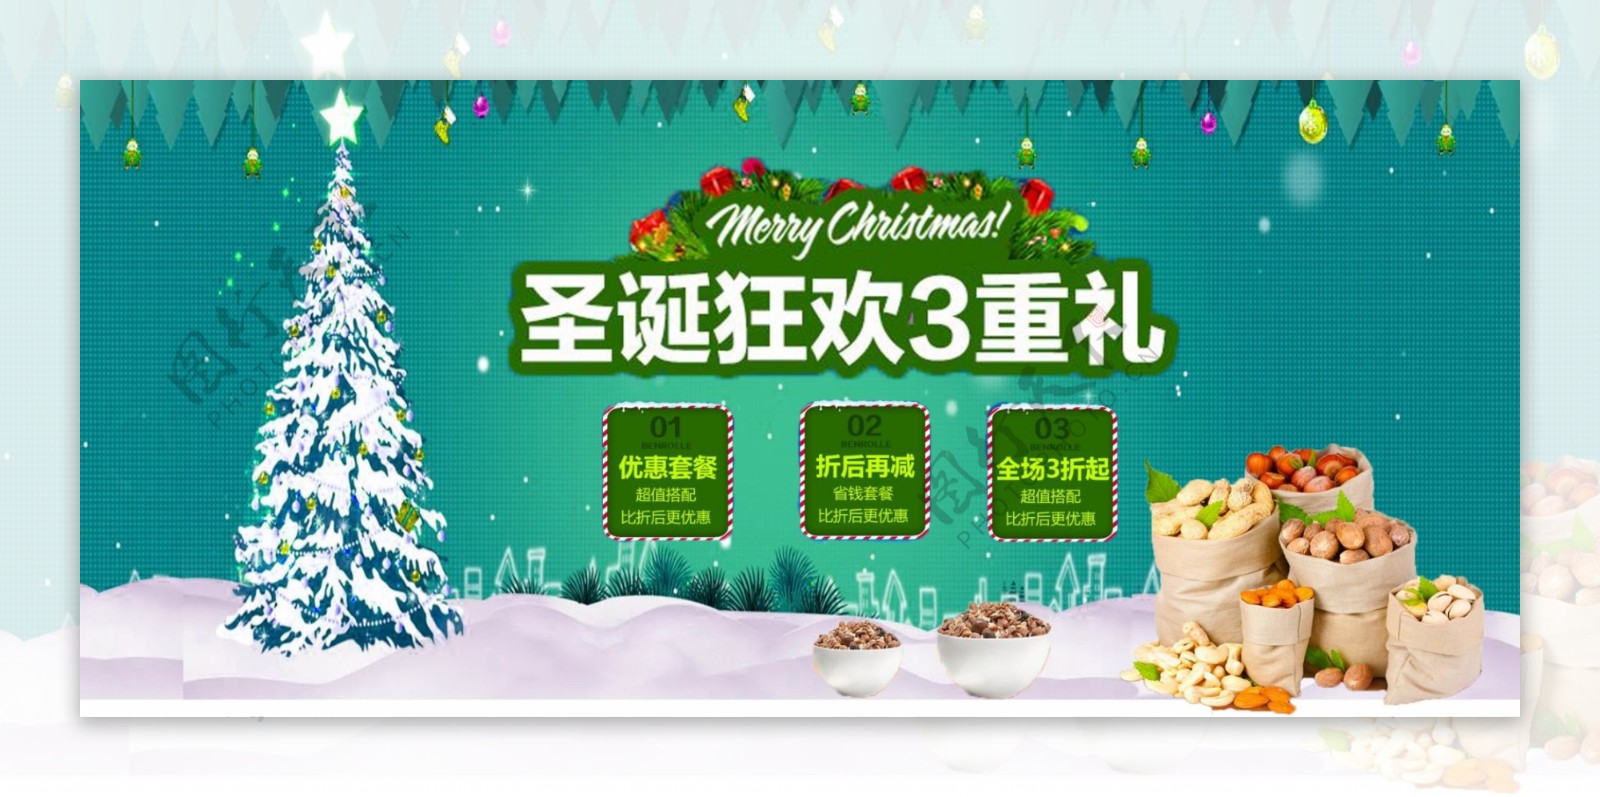 电商淘宝圣诞狂欢3重礼圣诞树零食促销海报